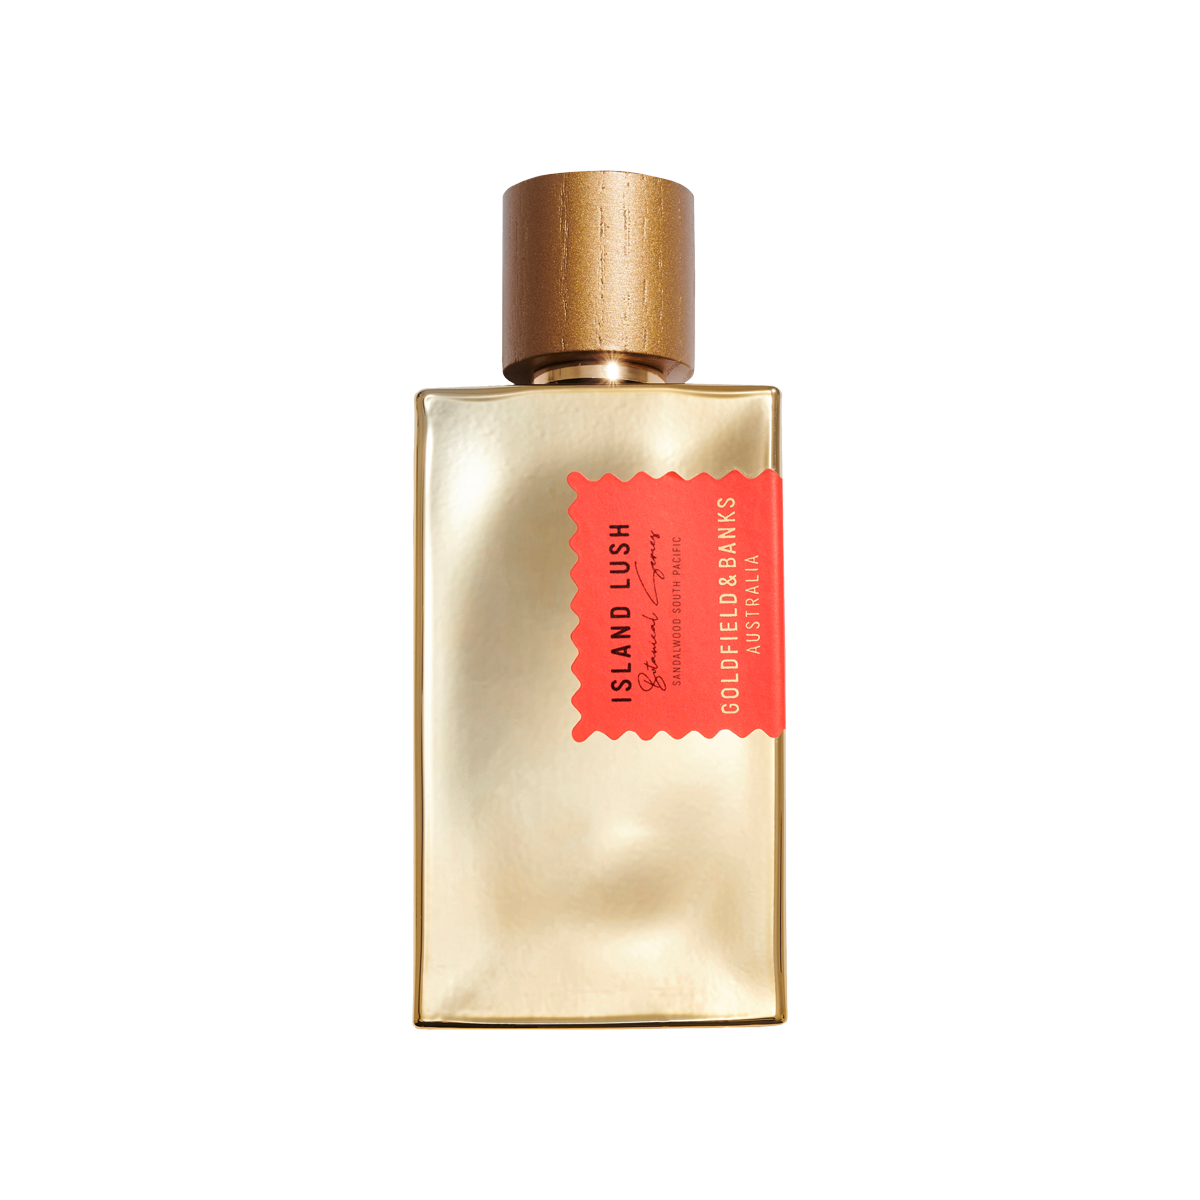 Goldfield & Banks - Island Lush Eau de Parfum